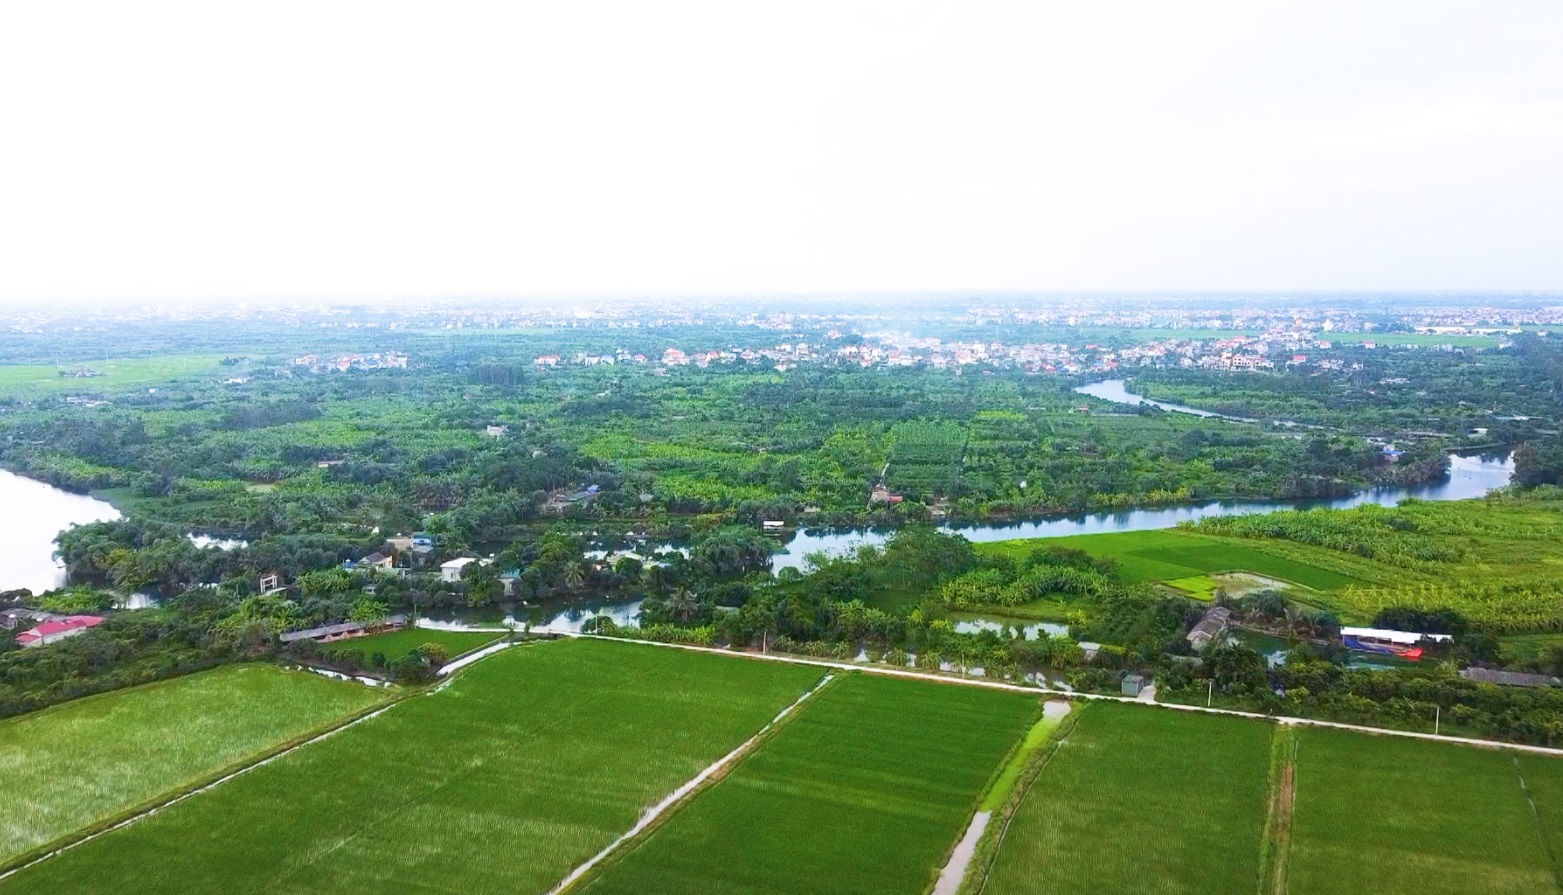 THÀNH ĐÔNG NGÀY MỚI: Thành phố Hải Dương thúc đẩy phát triển nông nghiệp ven đô